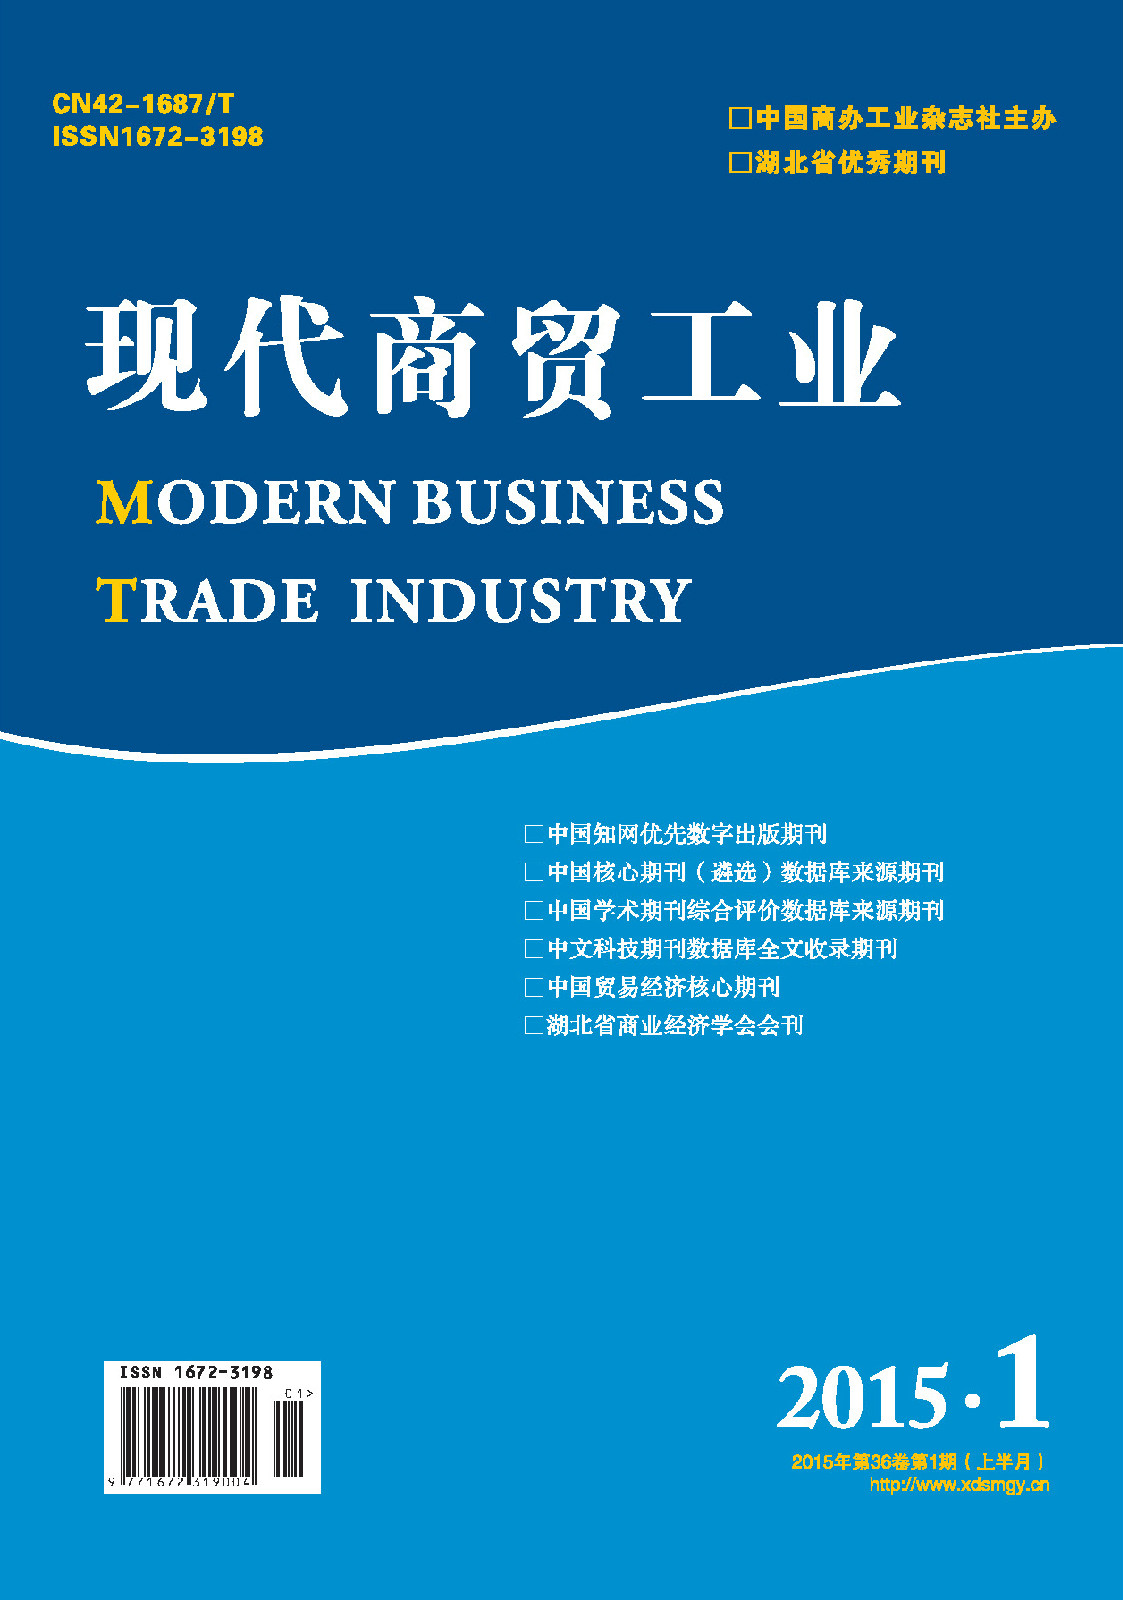 《現代商貿工業》雜誌封面